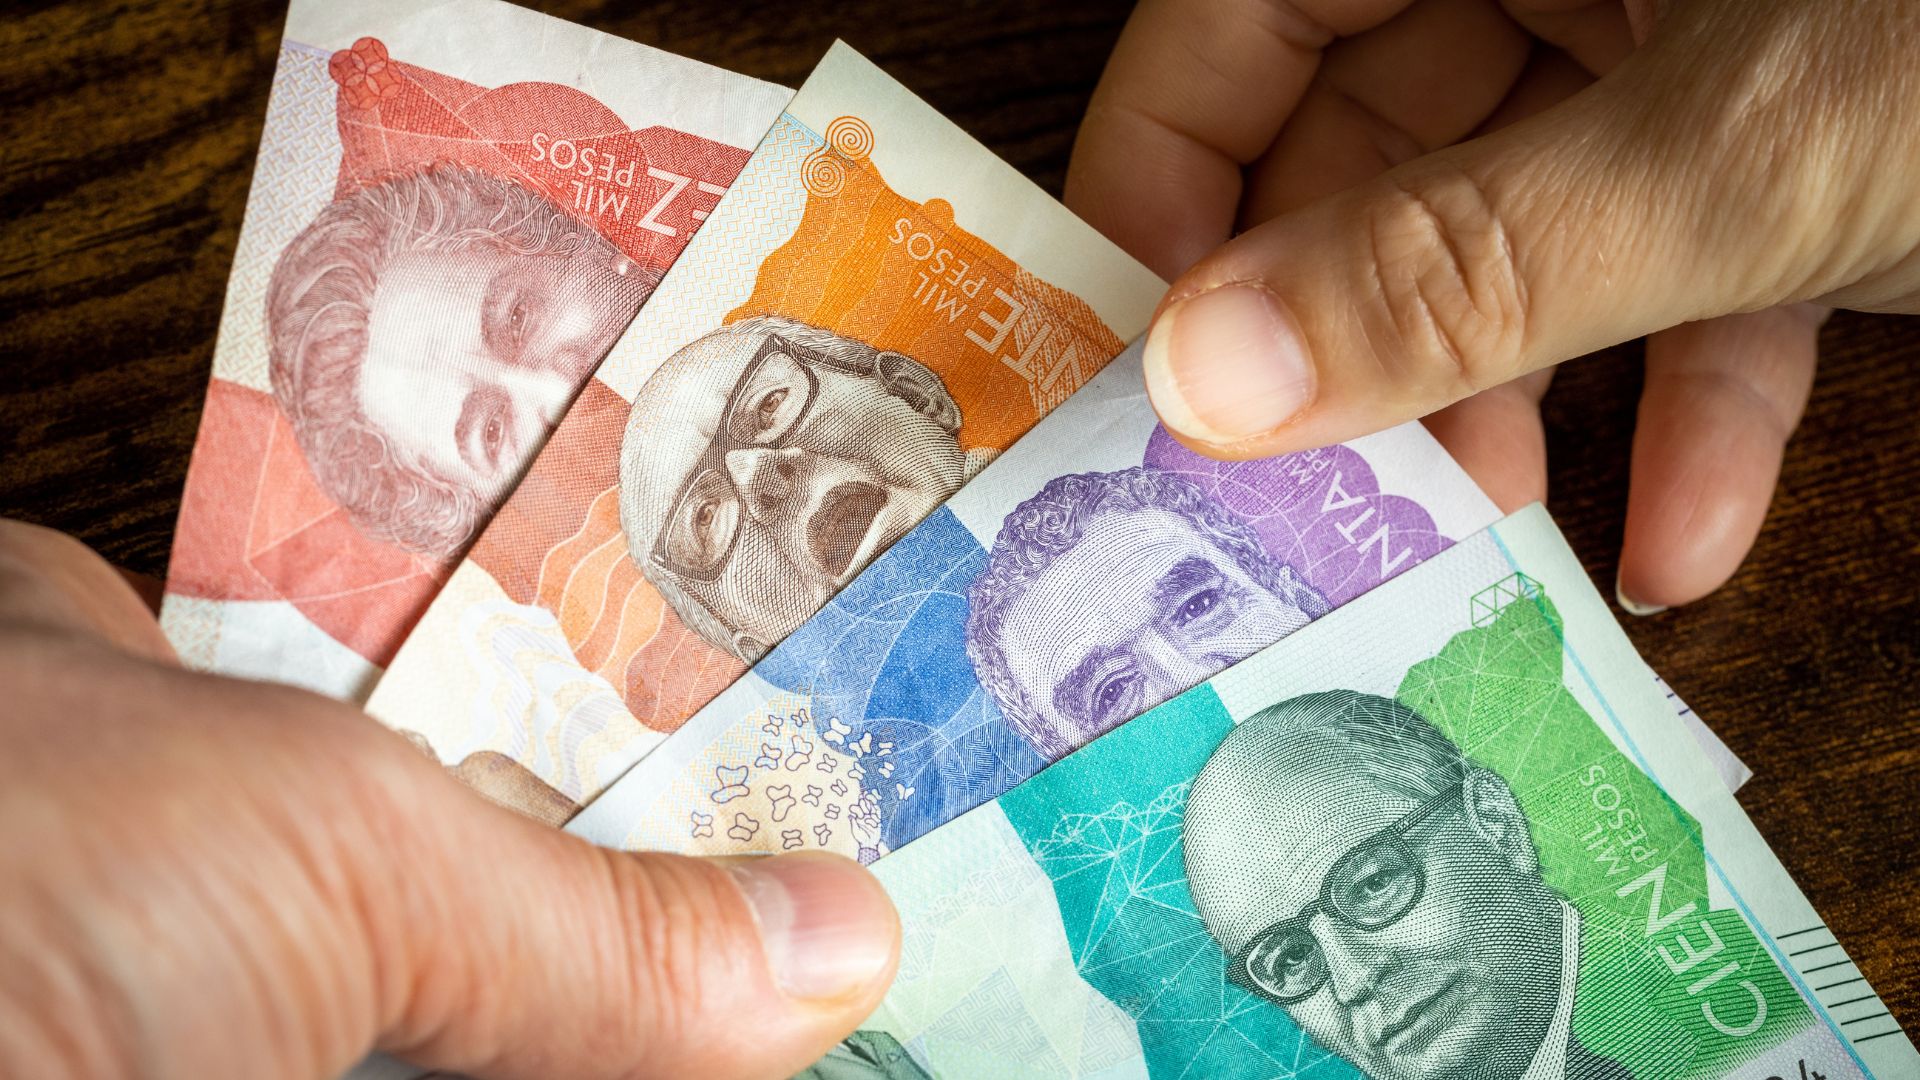 Imagen de dinero colombiano por nota sobre pensión 